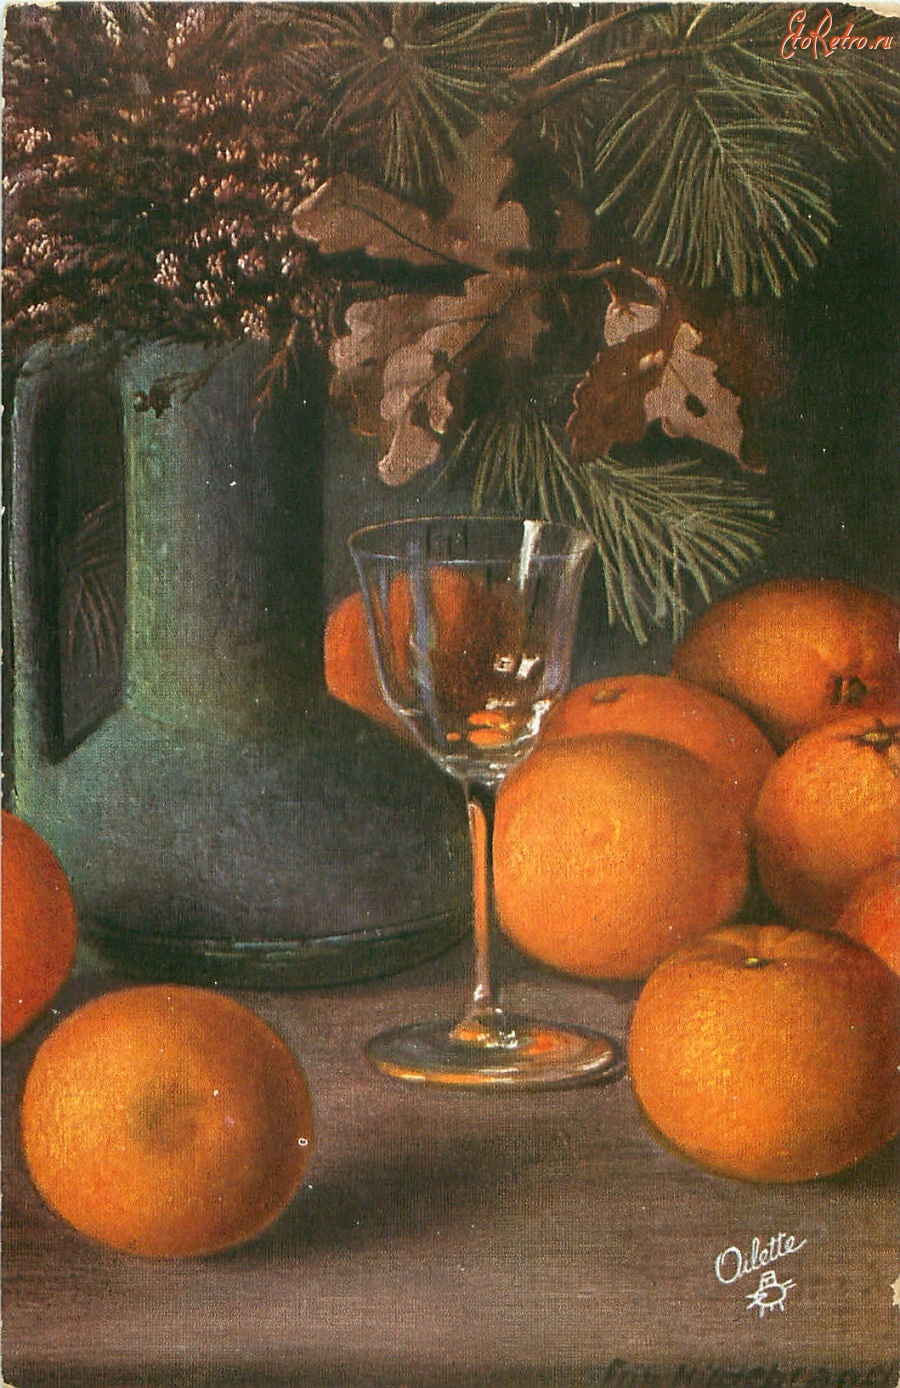 Ретро открытки - Фриц Хильдебранд. Апельсины и букет с дубовыми листьями, вереском и сосновой веткой